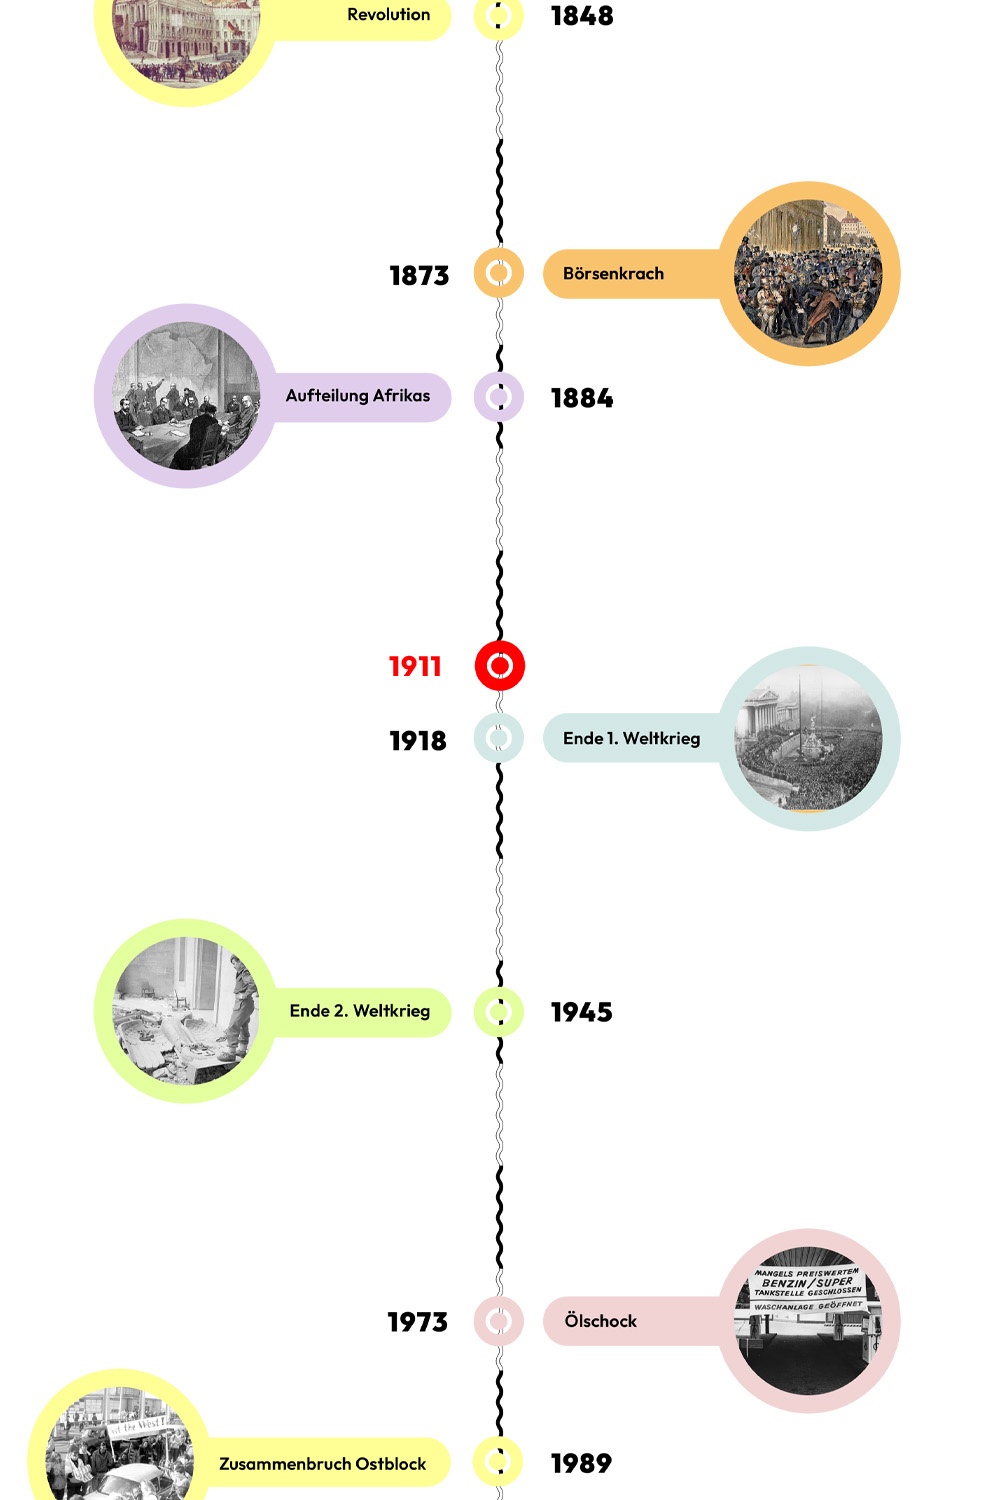 Zeitstrahl mit historischen Ereignissen - 1911 ist hervorgehoben © wasbishergeschah.at